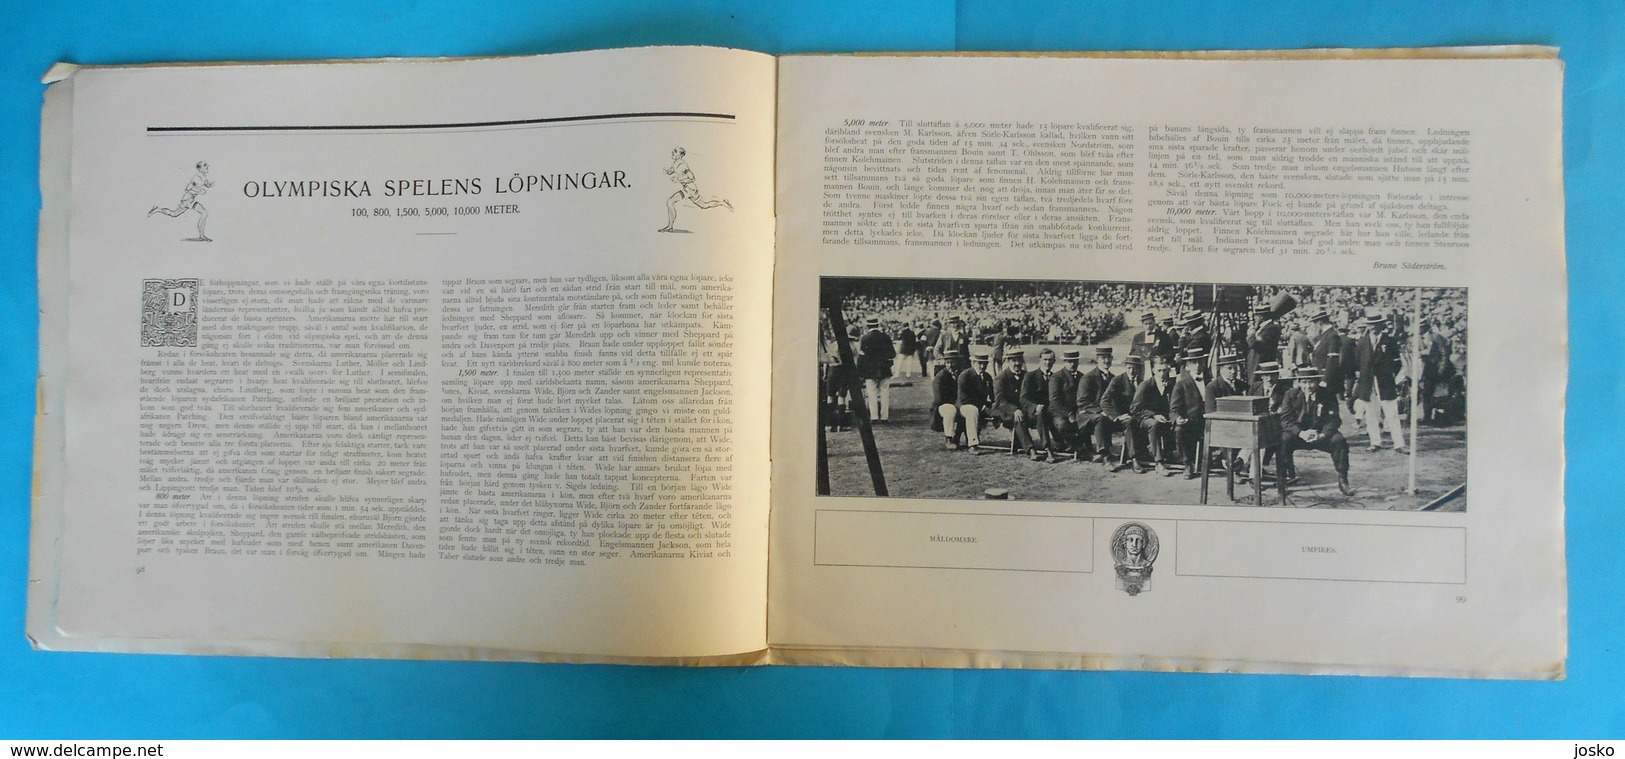 ATHLETICS On OLYMPIC GAMES 1912 STOCKHOLM - Original Vintage Programme * Athletisme Atletismo Atletica Athletik Athletic - Livres